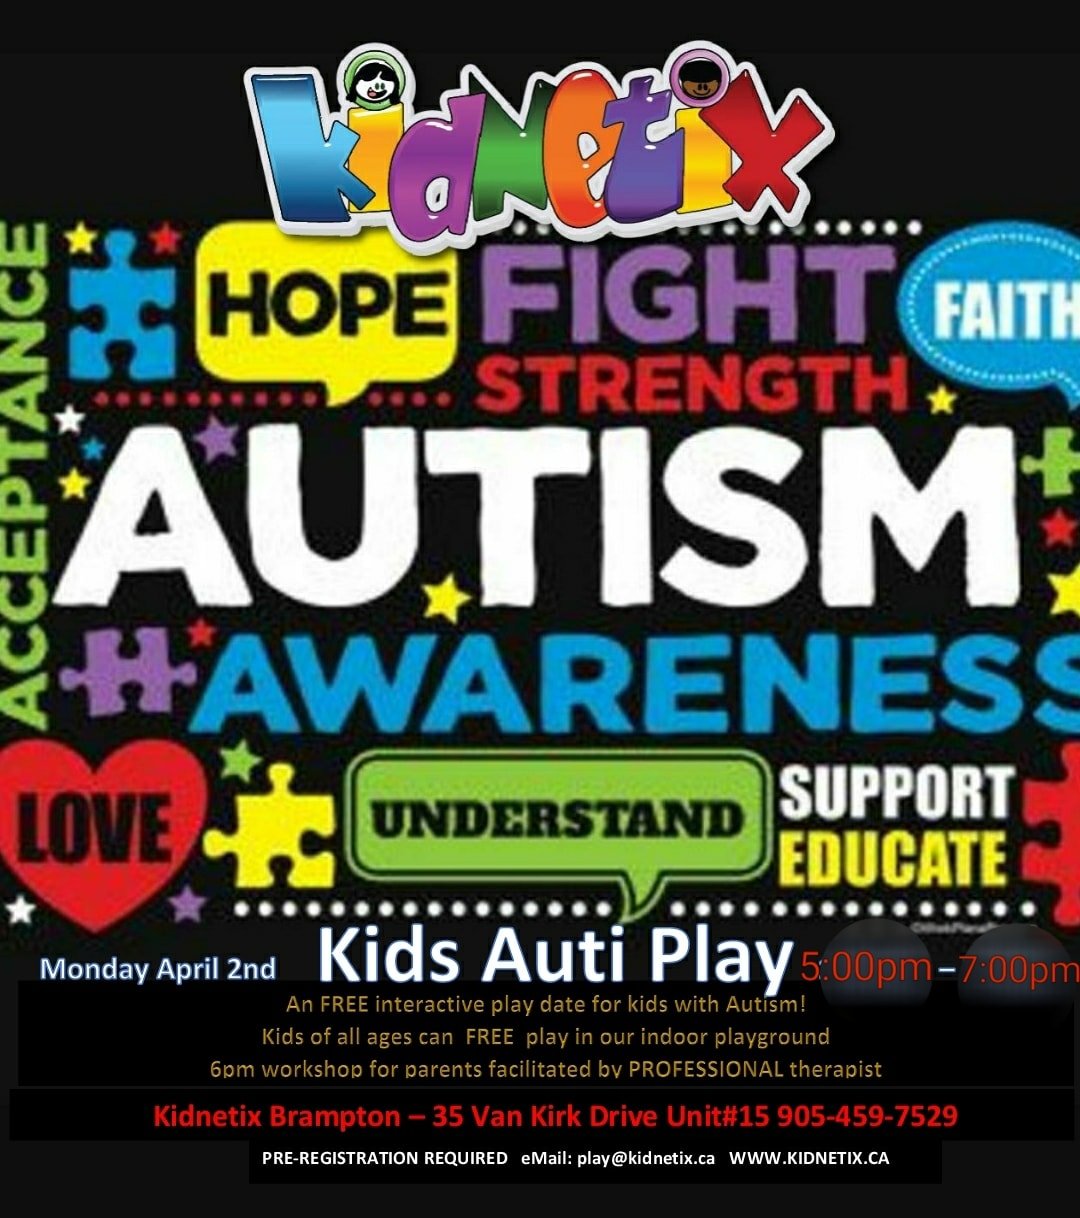 Autism Awareness Day: Kids Auti